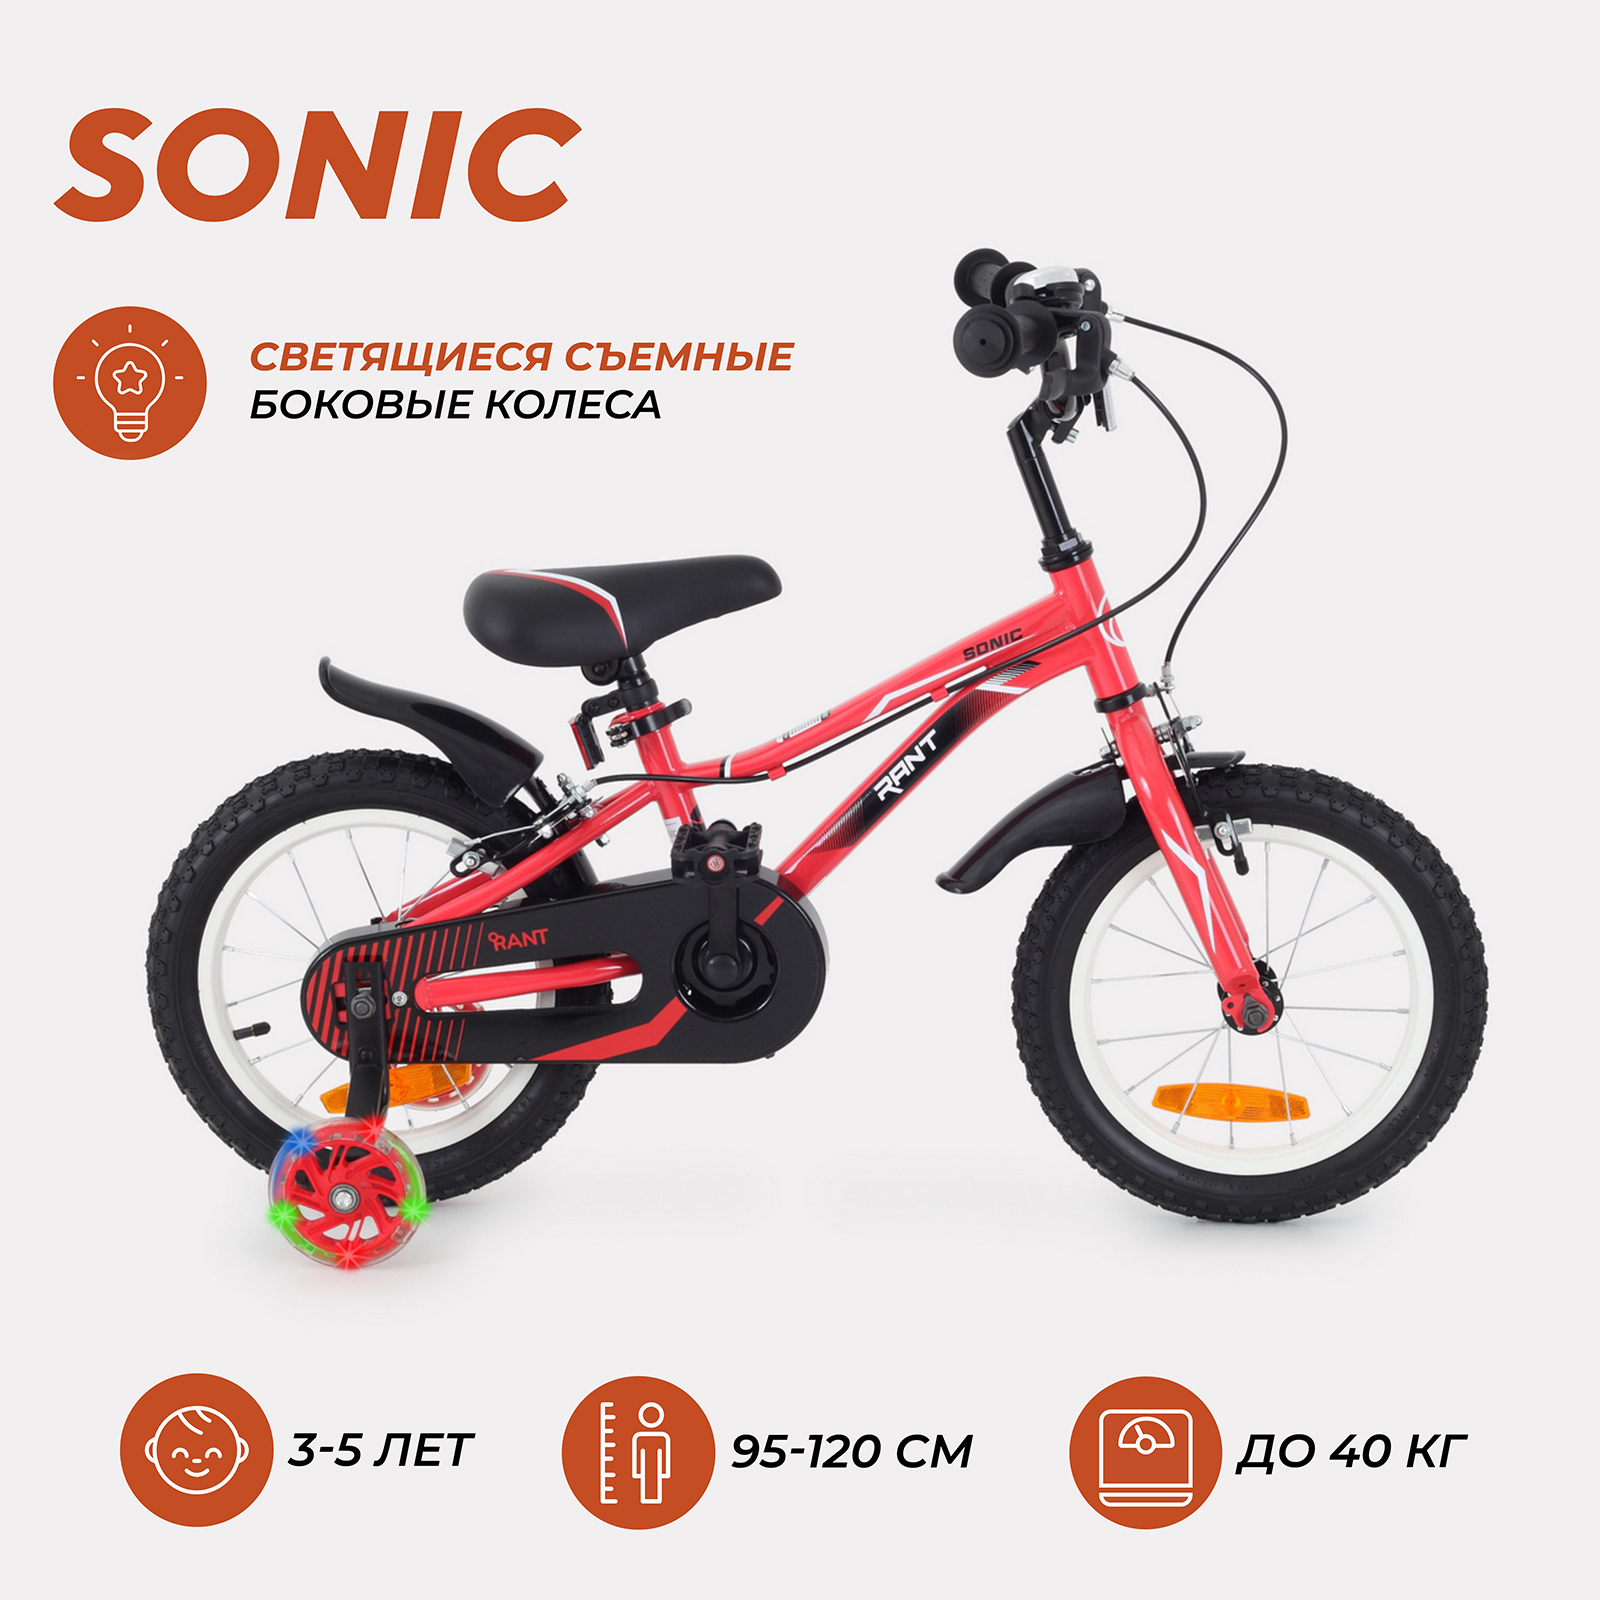 Велосипед двухколесный детский RANT Sonic красный